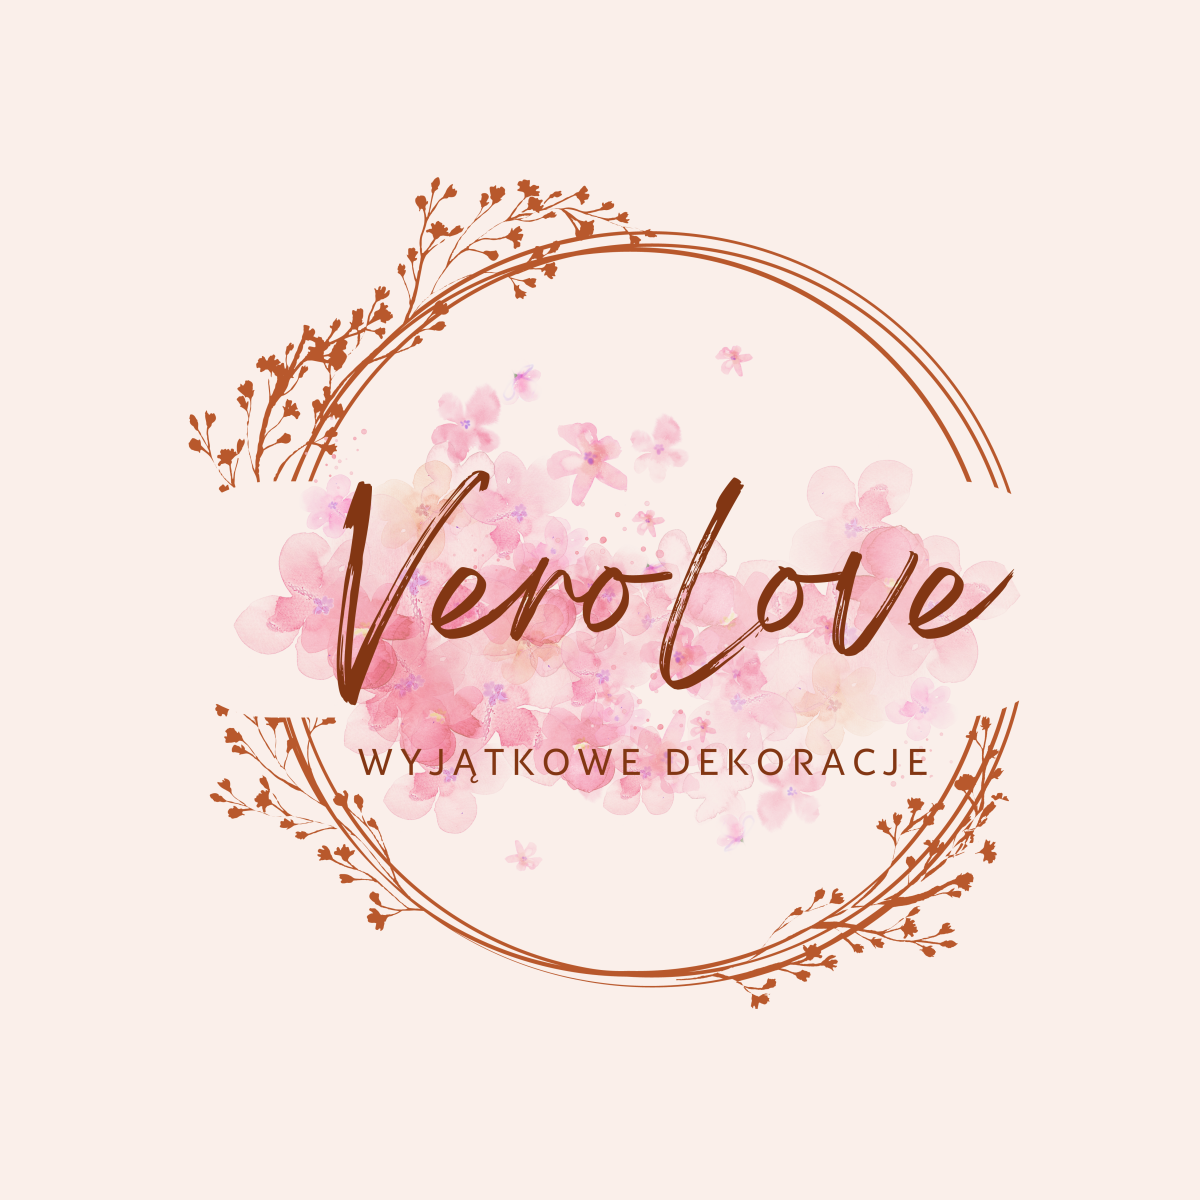 VeroLove - wyjątkowe dekoracje